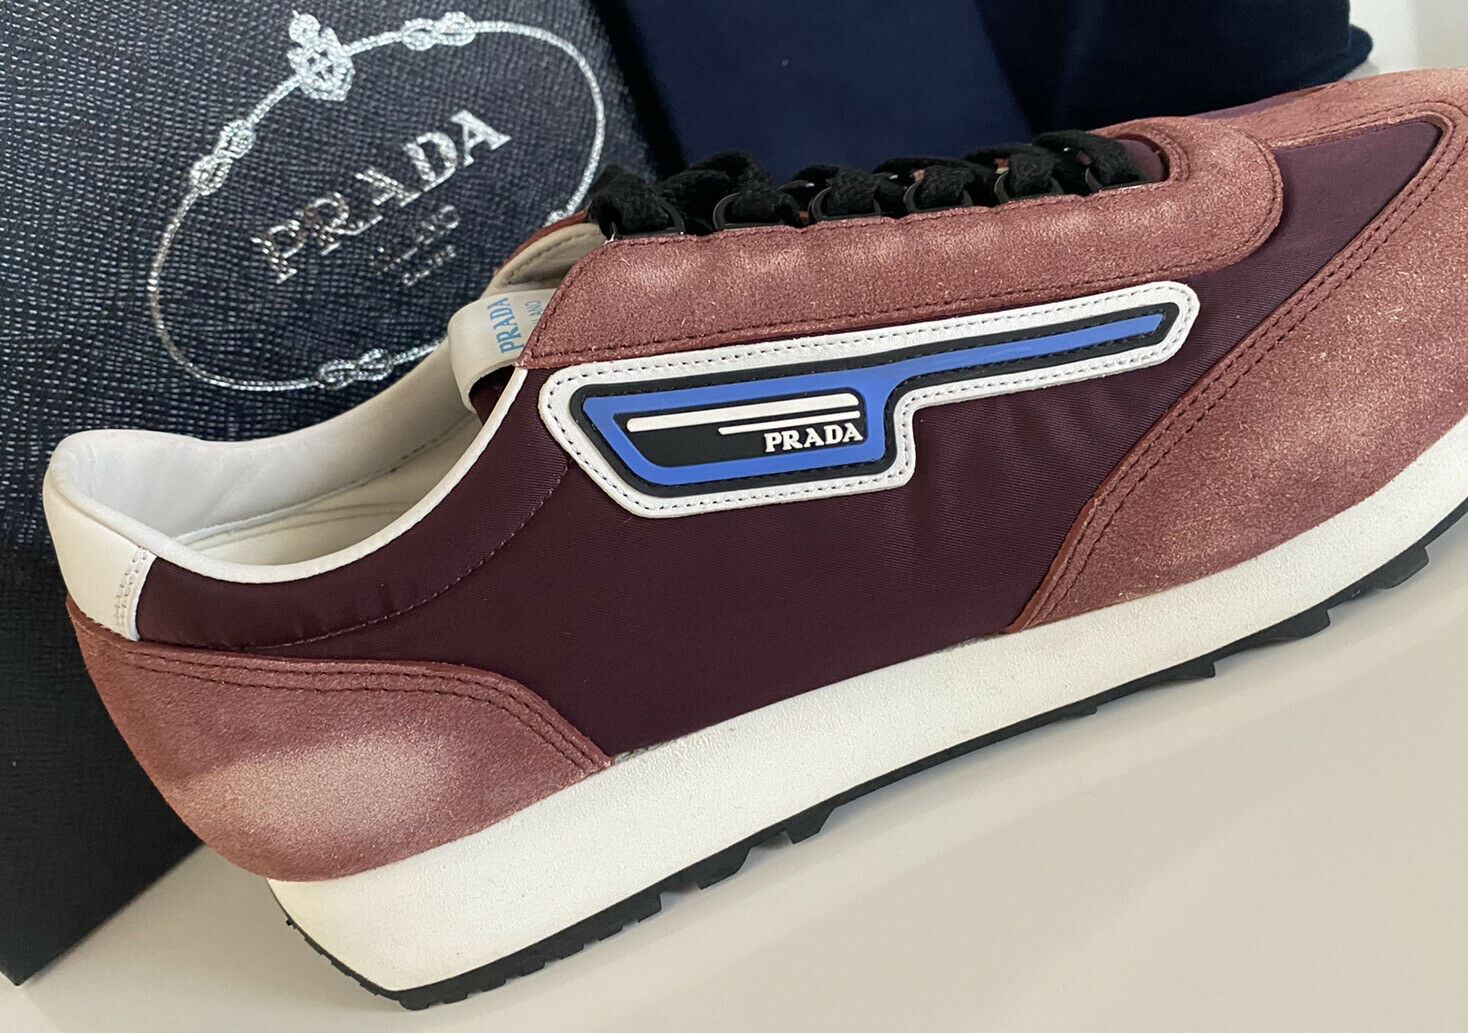 NIB $810 PRADA Men's Purple Suede/Leather Sneakers 10 US 2EG276 Made In Italy